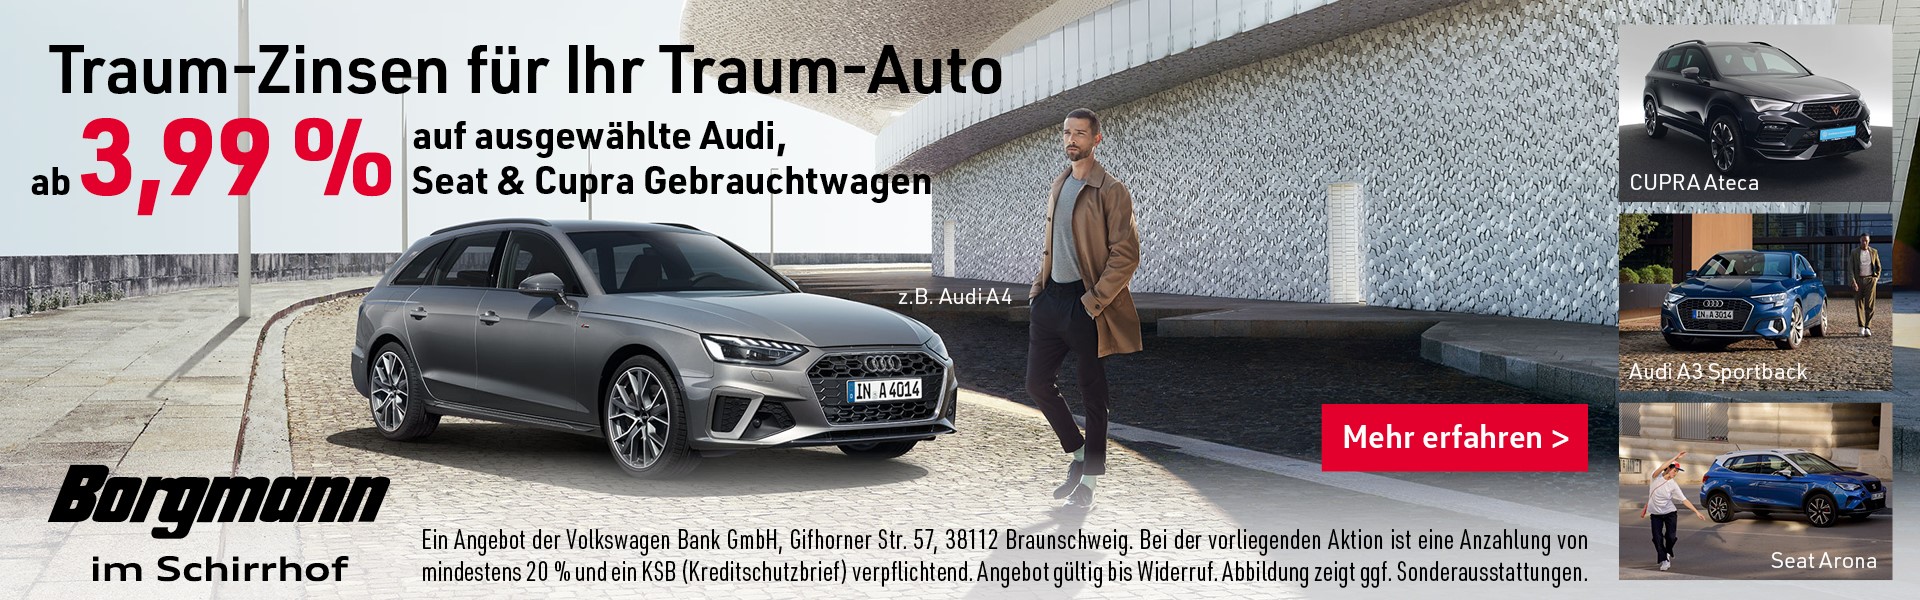 Traum-Zins ab 3,99% auf Audi, Seat & Cupra Gebrauchtwagen